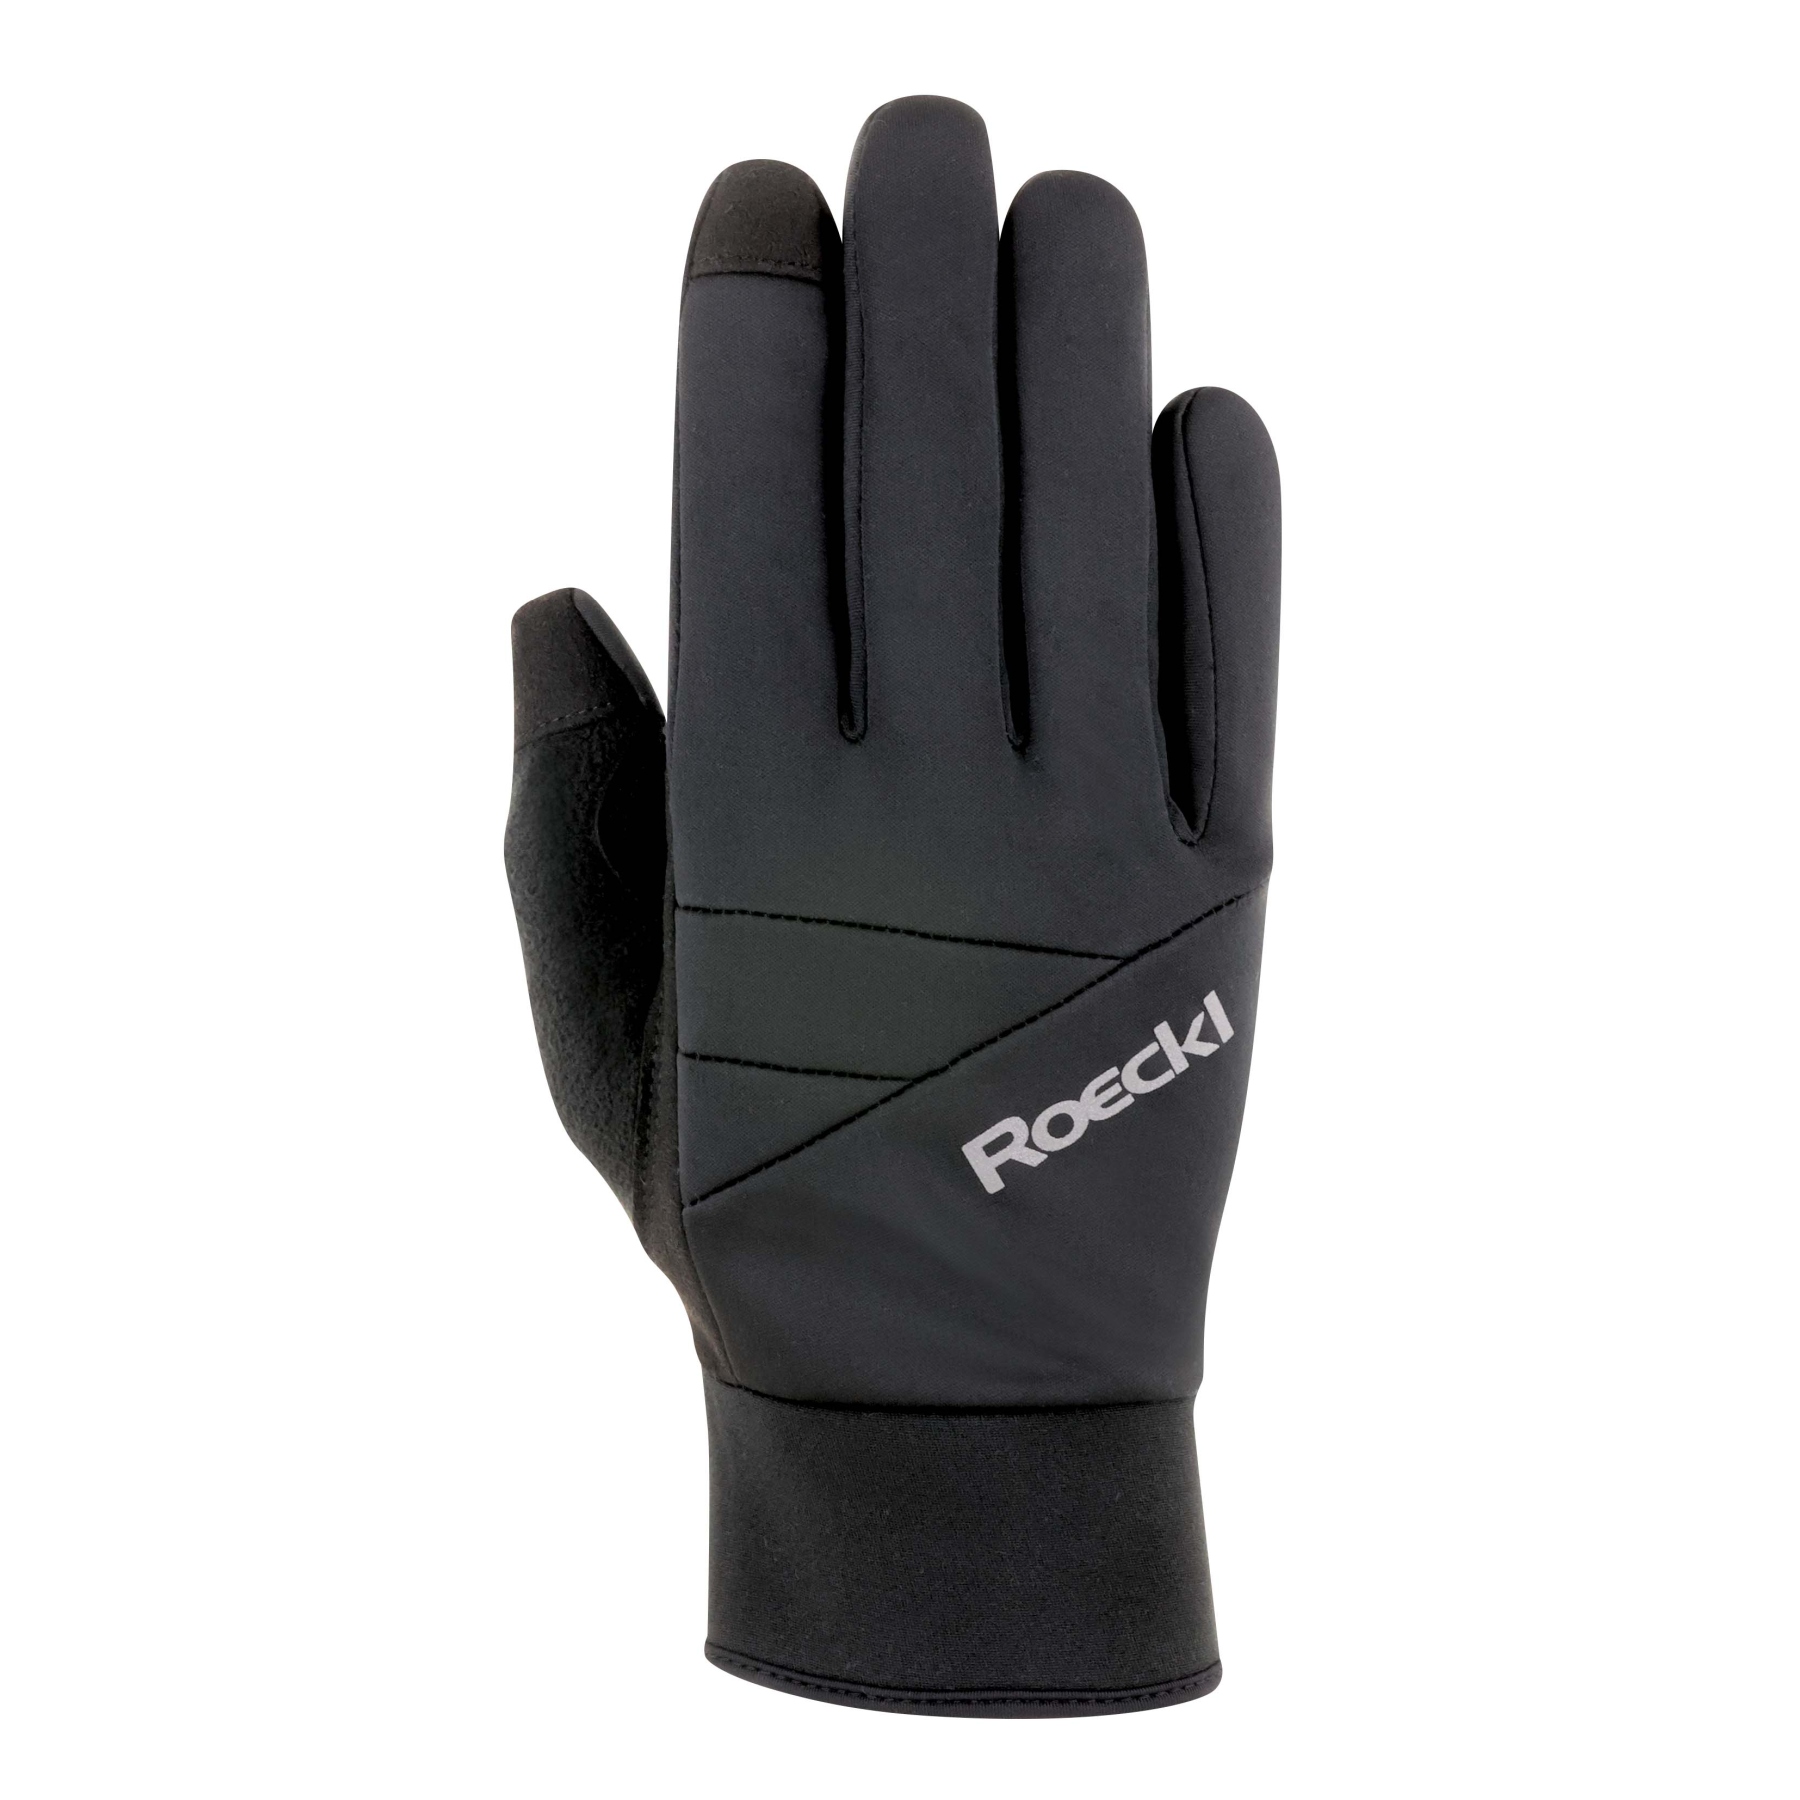 Productfoto van Roeckl Sports Reichenthal Fietshandschoenen - zwart 9000